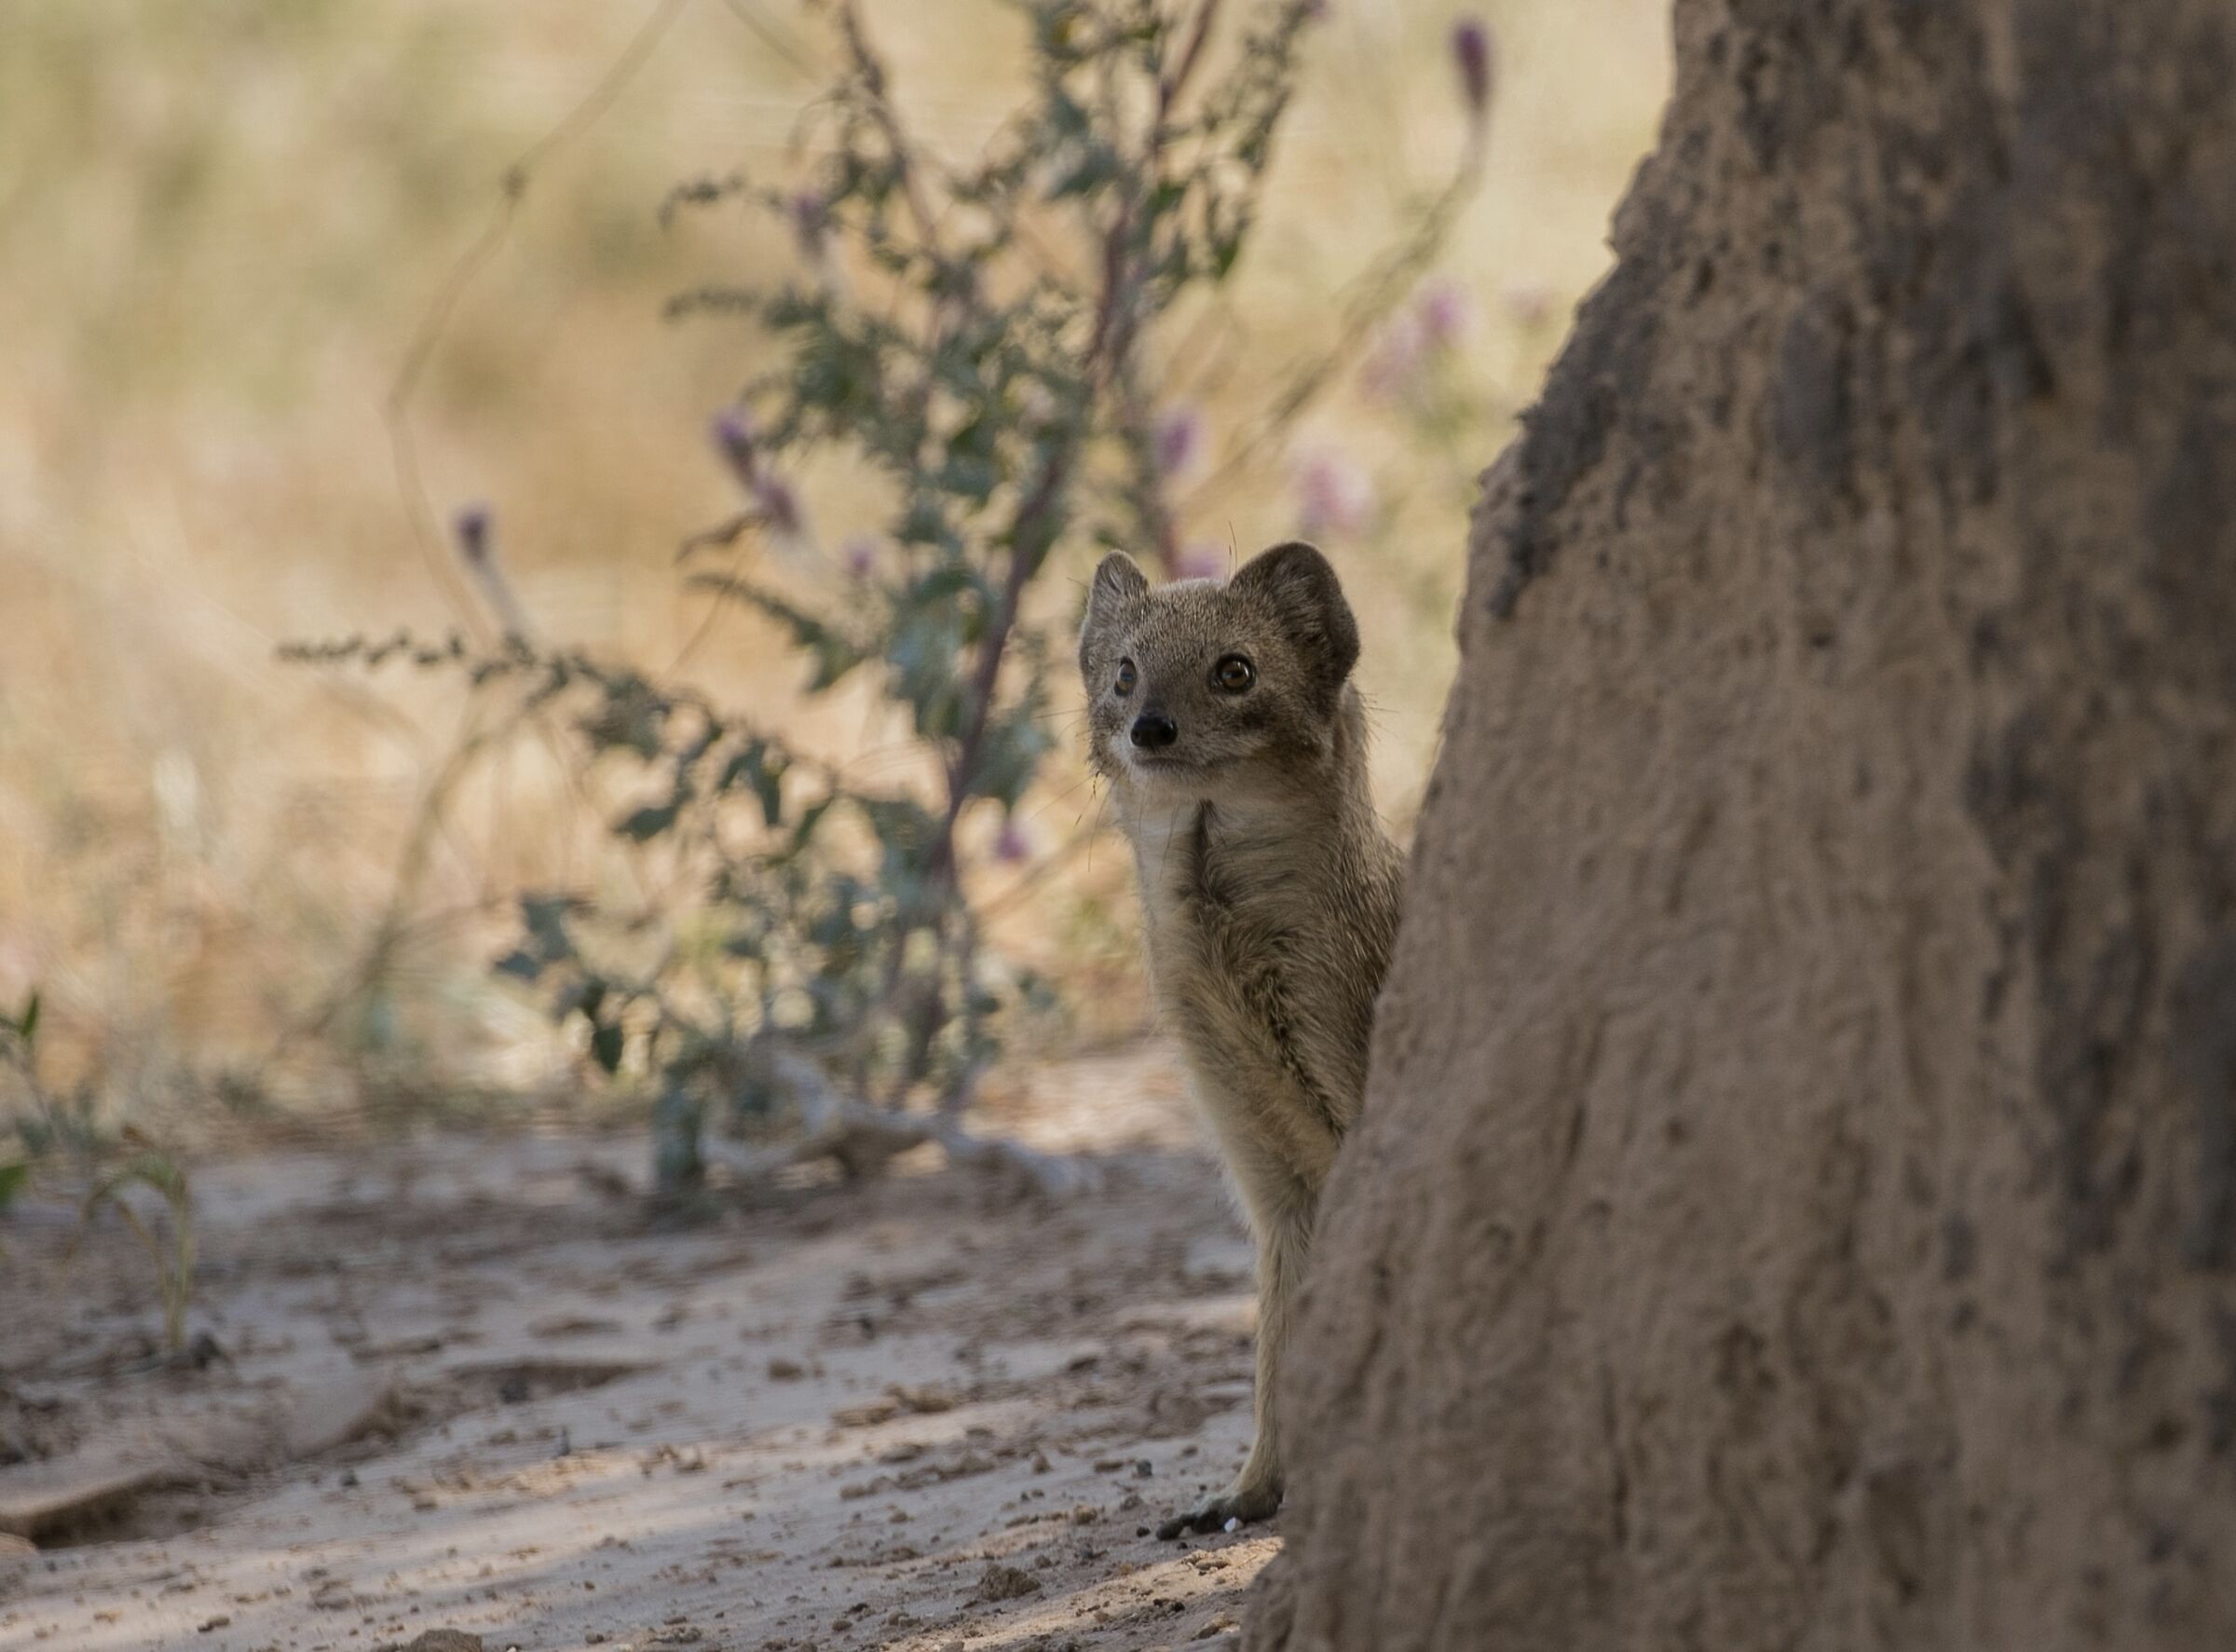 Curious mongoose...